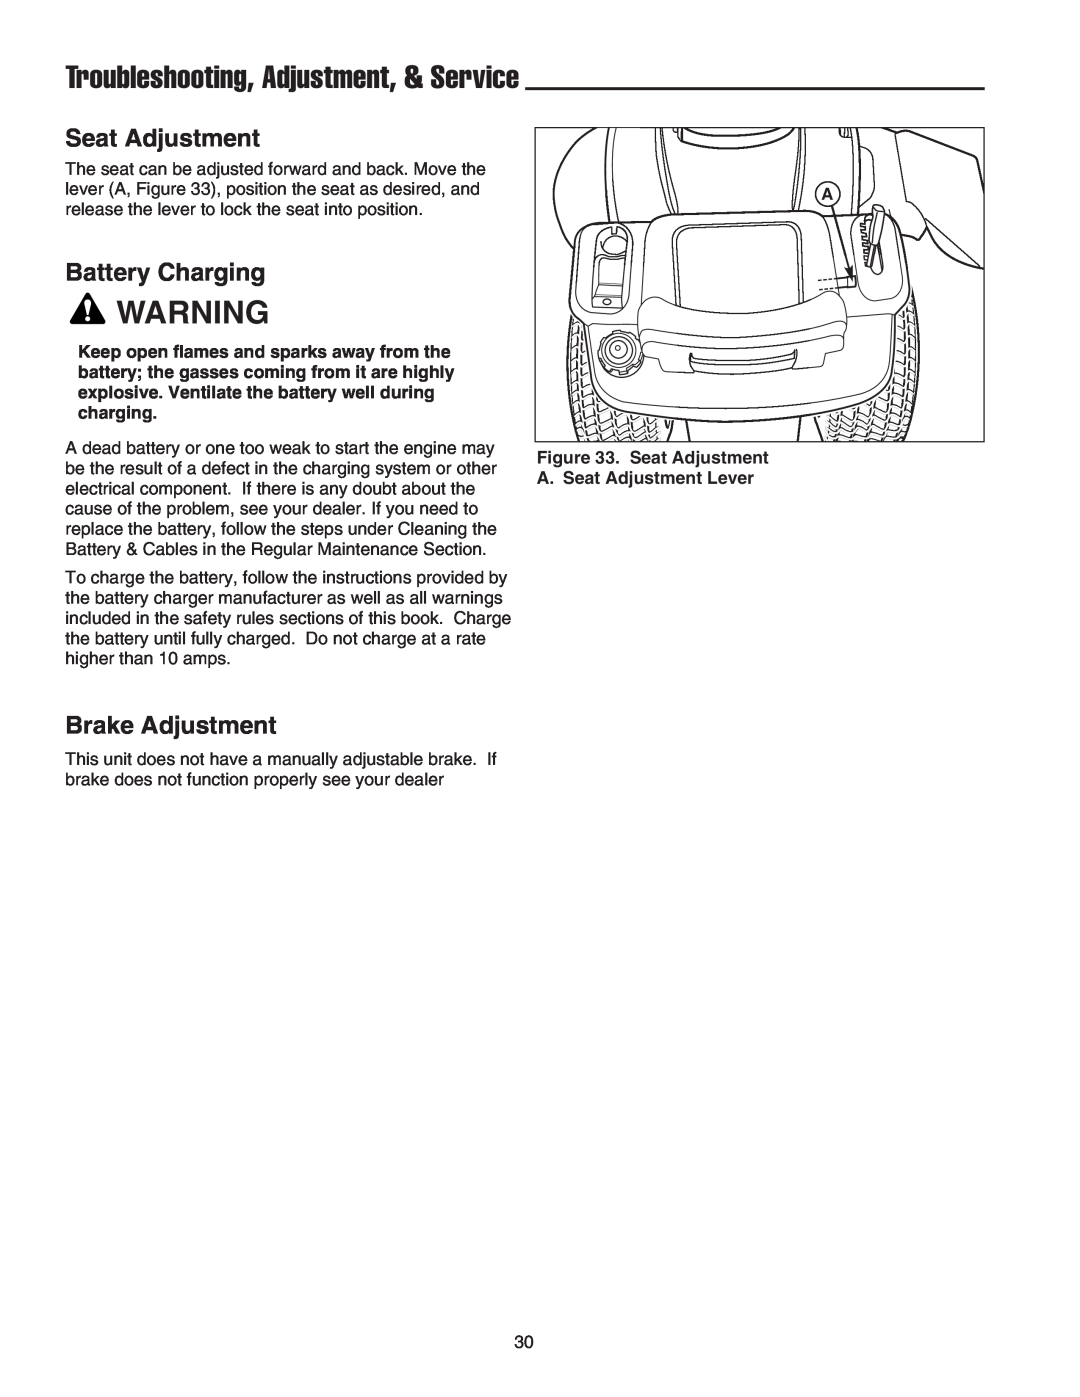 Snapper LT-200 manual Troubleshooting, Adjustment, & Service, Seat Adjustment, Battery Charging, Brake Adjustment 